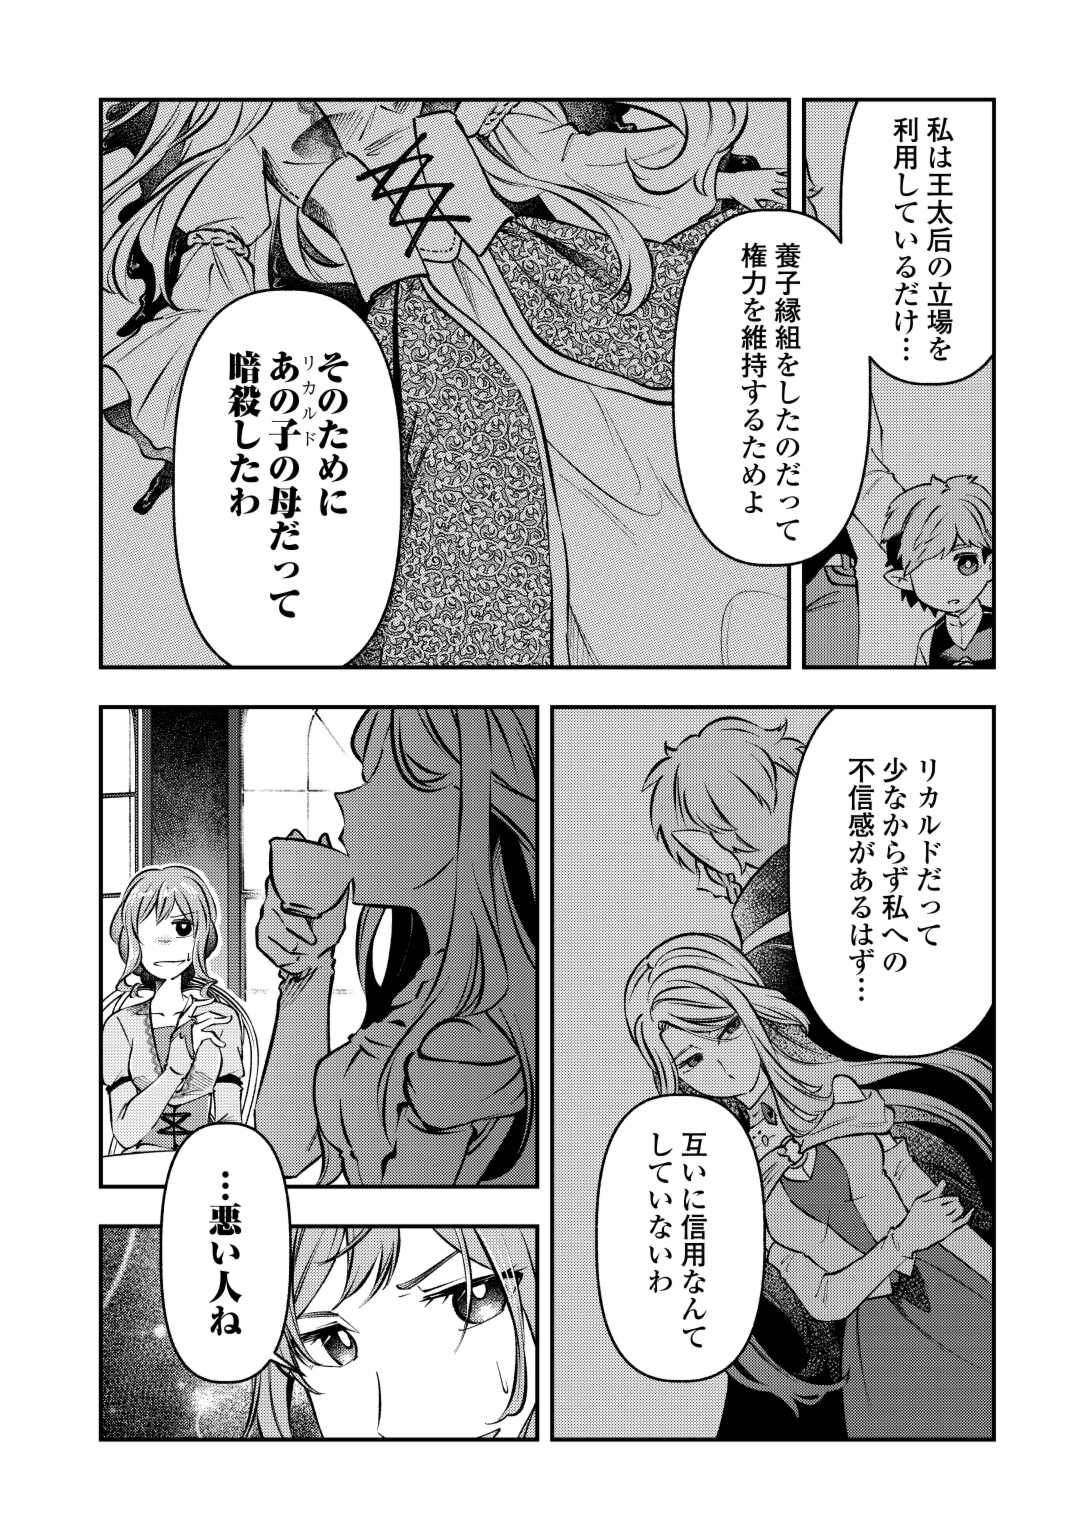 Osanago wa Saikyou no Tamer da to Kizuiteimasen! - Chapter 10 - Page 6